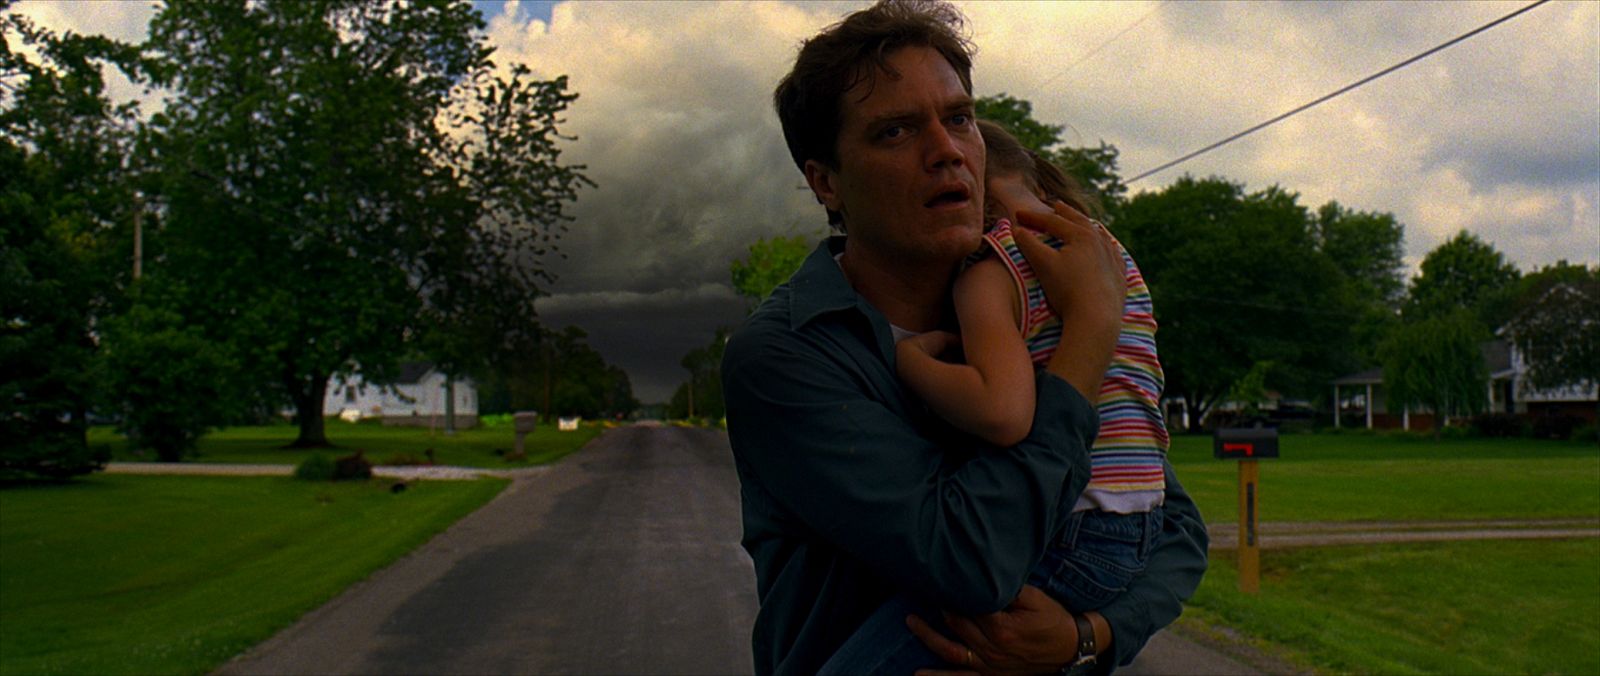 Una escena de la película 'Take shelter', de Jeff Nichols.